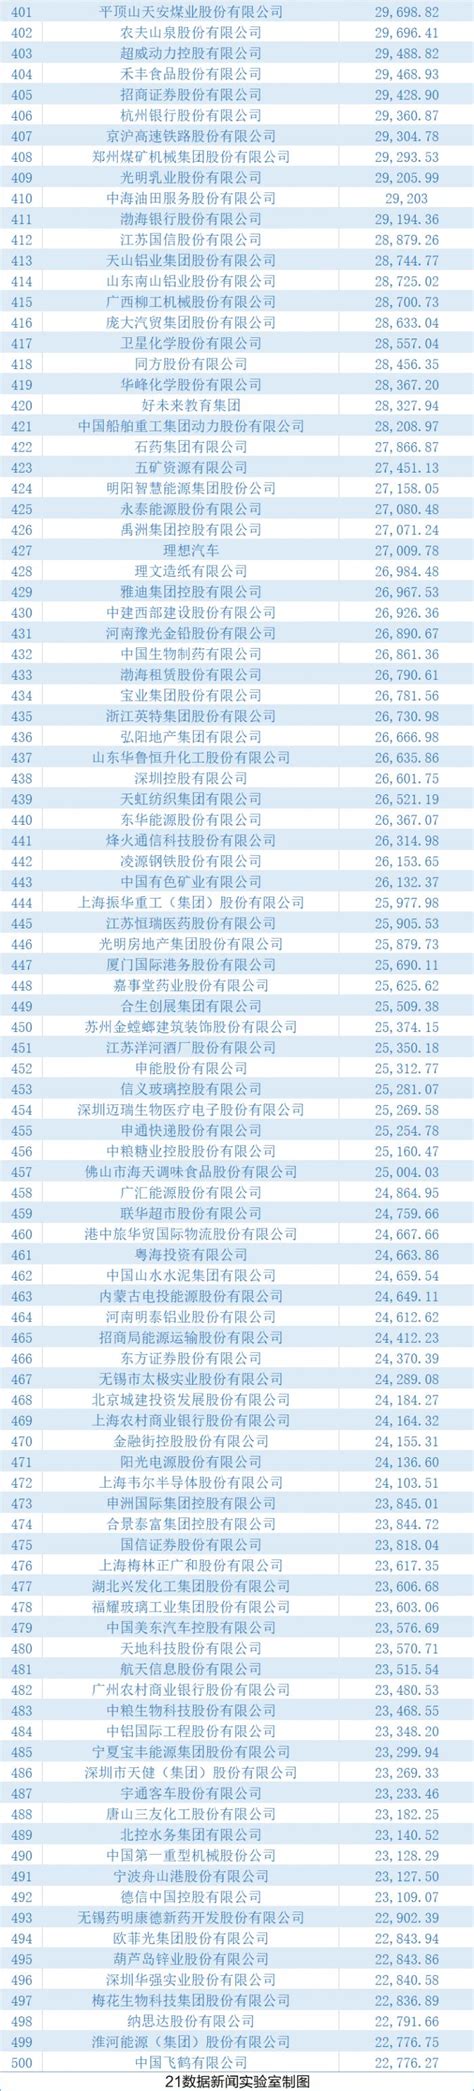 2022年中国500强排行榜揭晓___2011_心似白云_新浪博客